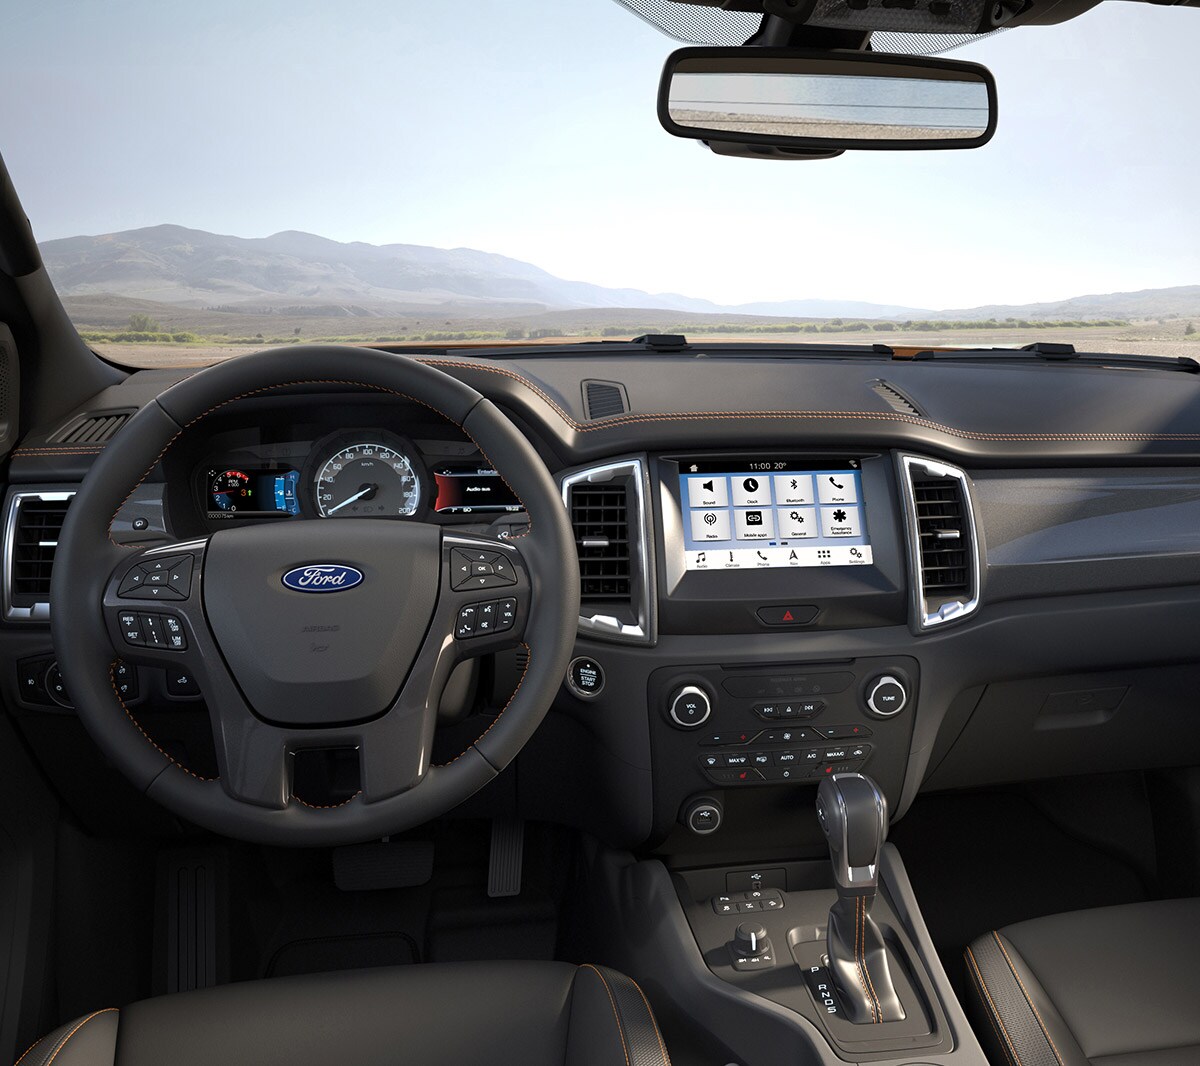 Ford Ranger Innenraum. Detailansicht der Fahrerkabine mit Multifunktionsdisplay